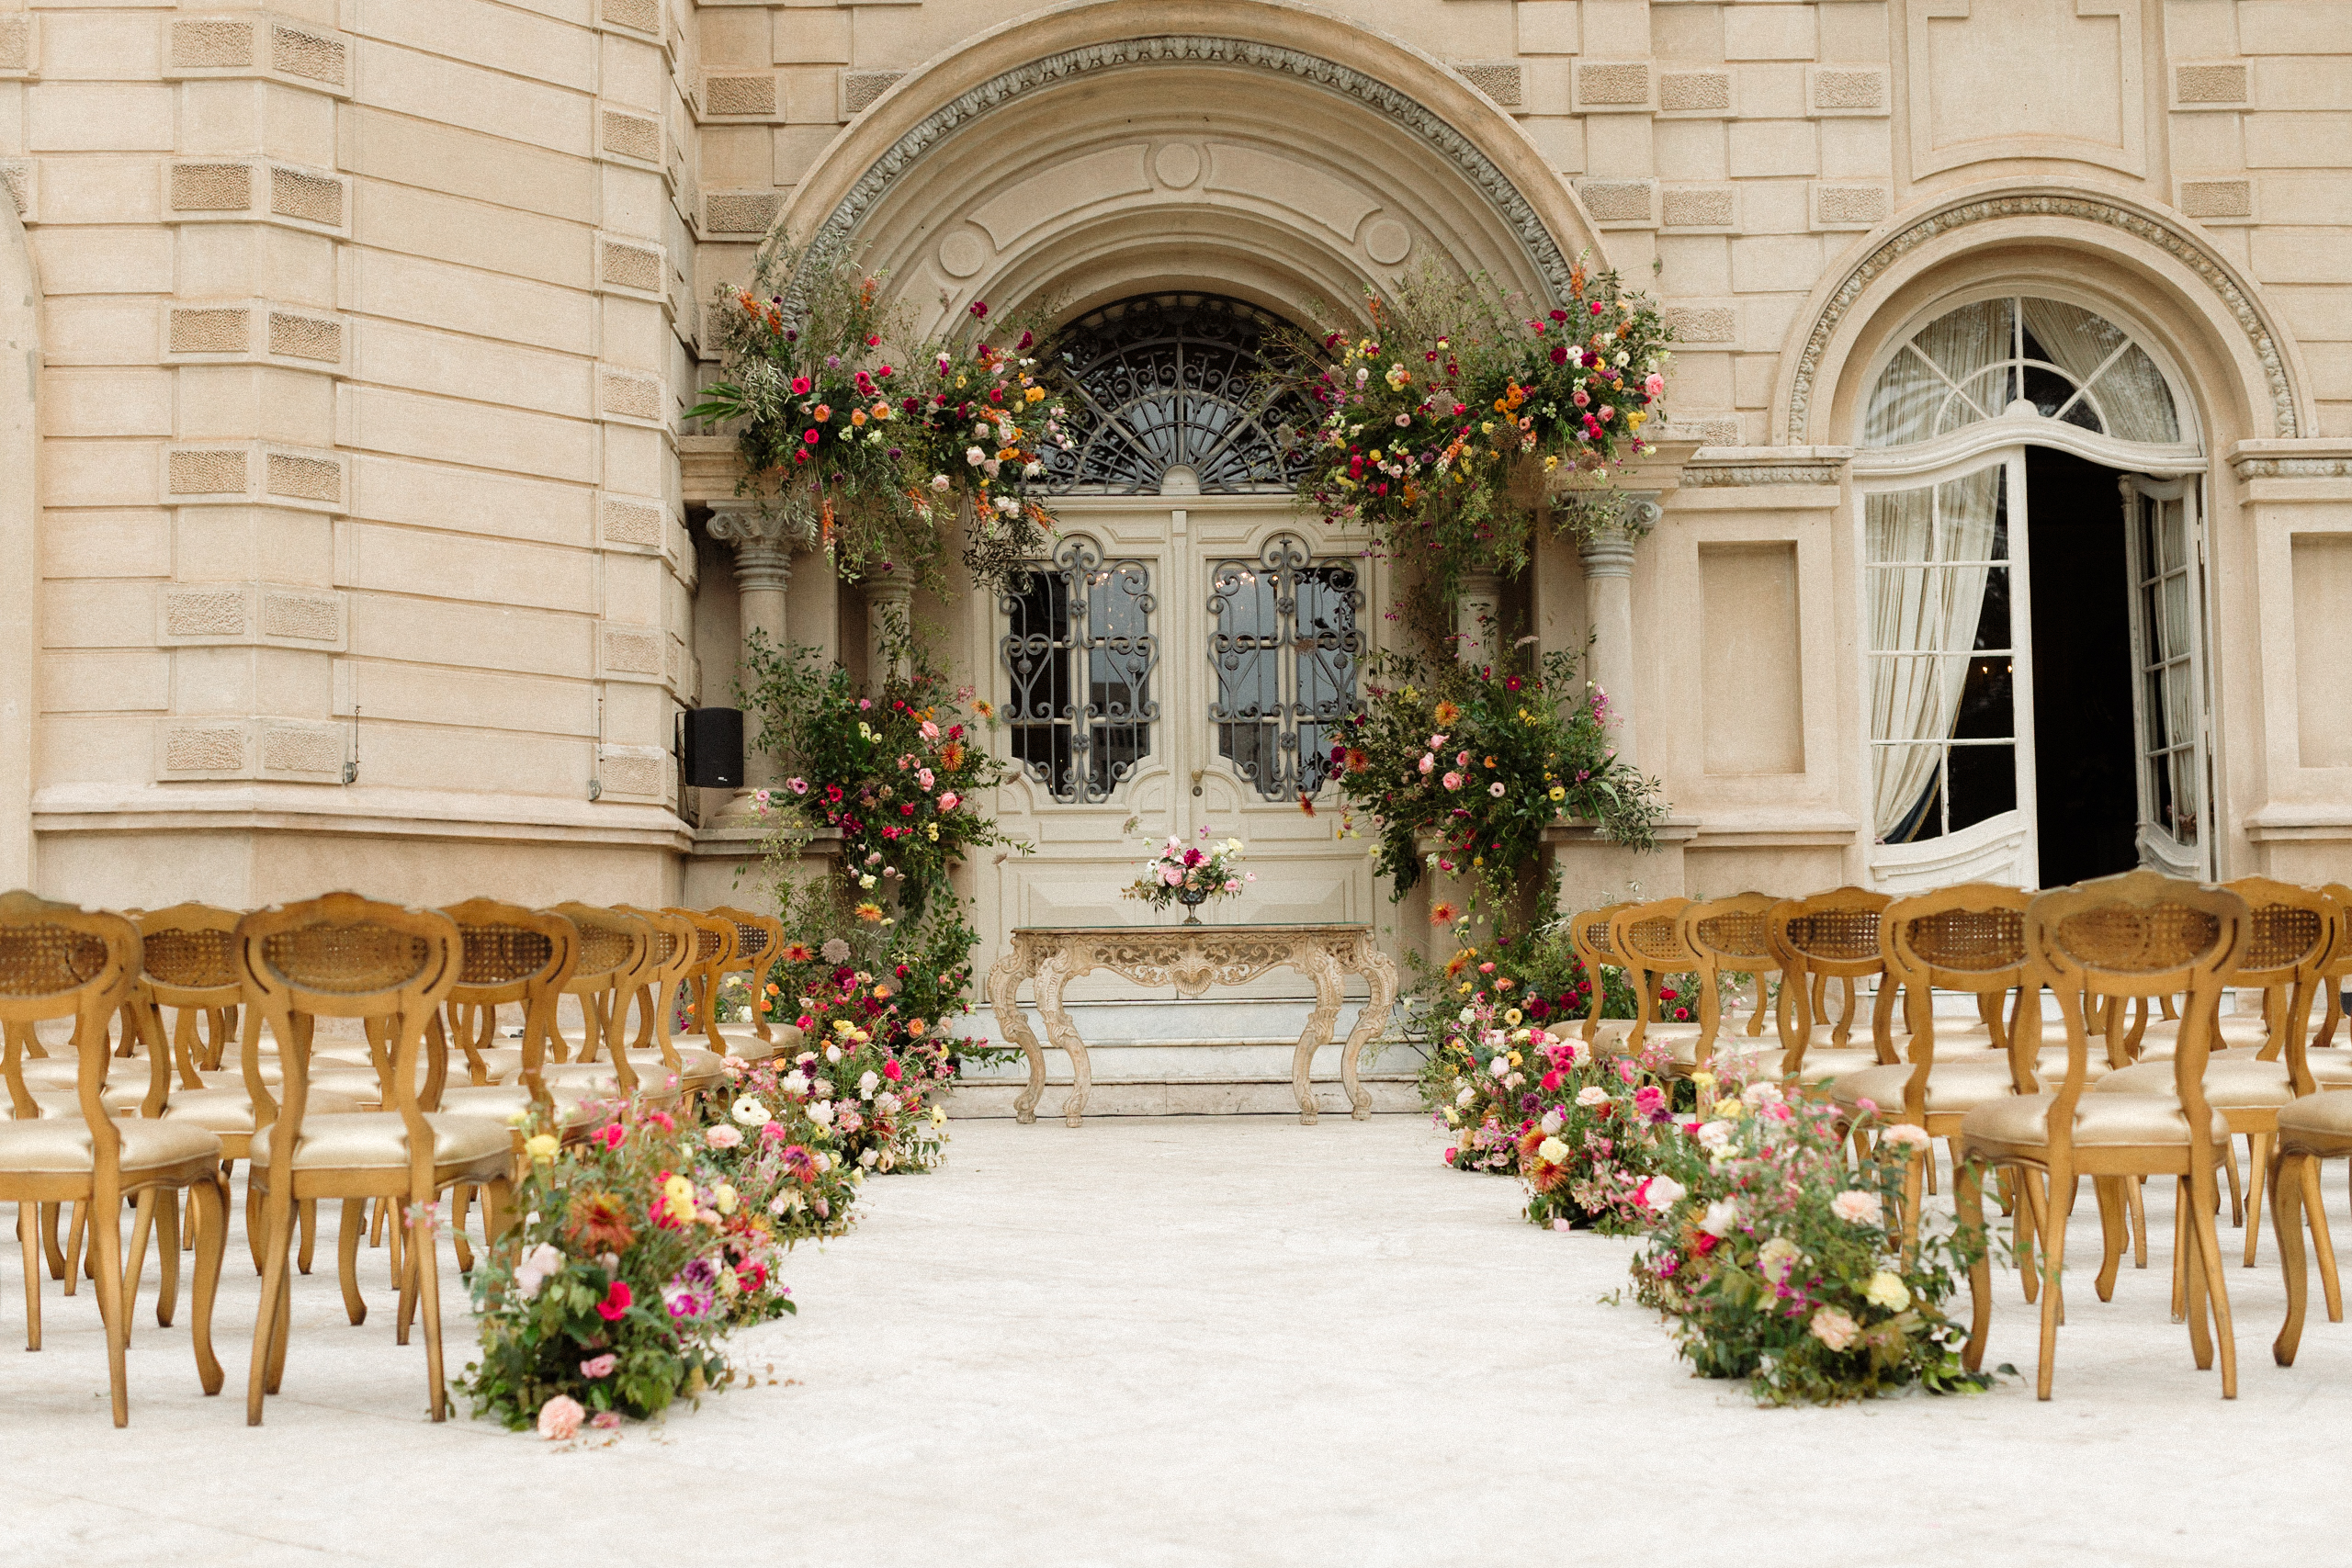 Fachada do Castelo do Batel decorada com flores para cerimônia de casamento | Foto: Flor de Sal